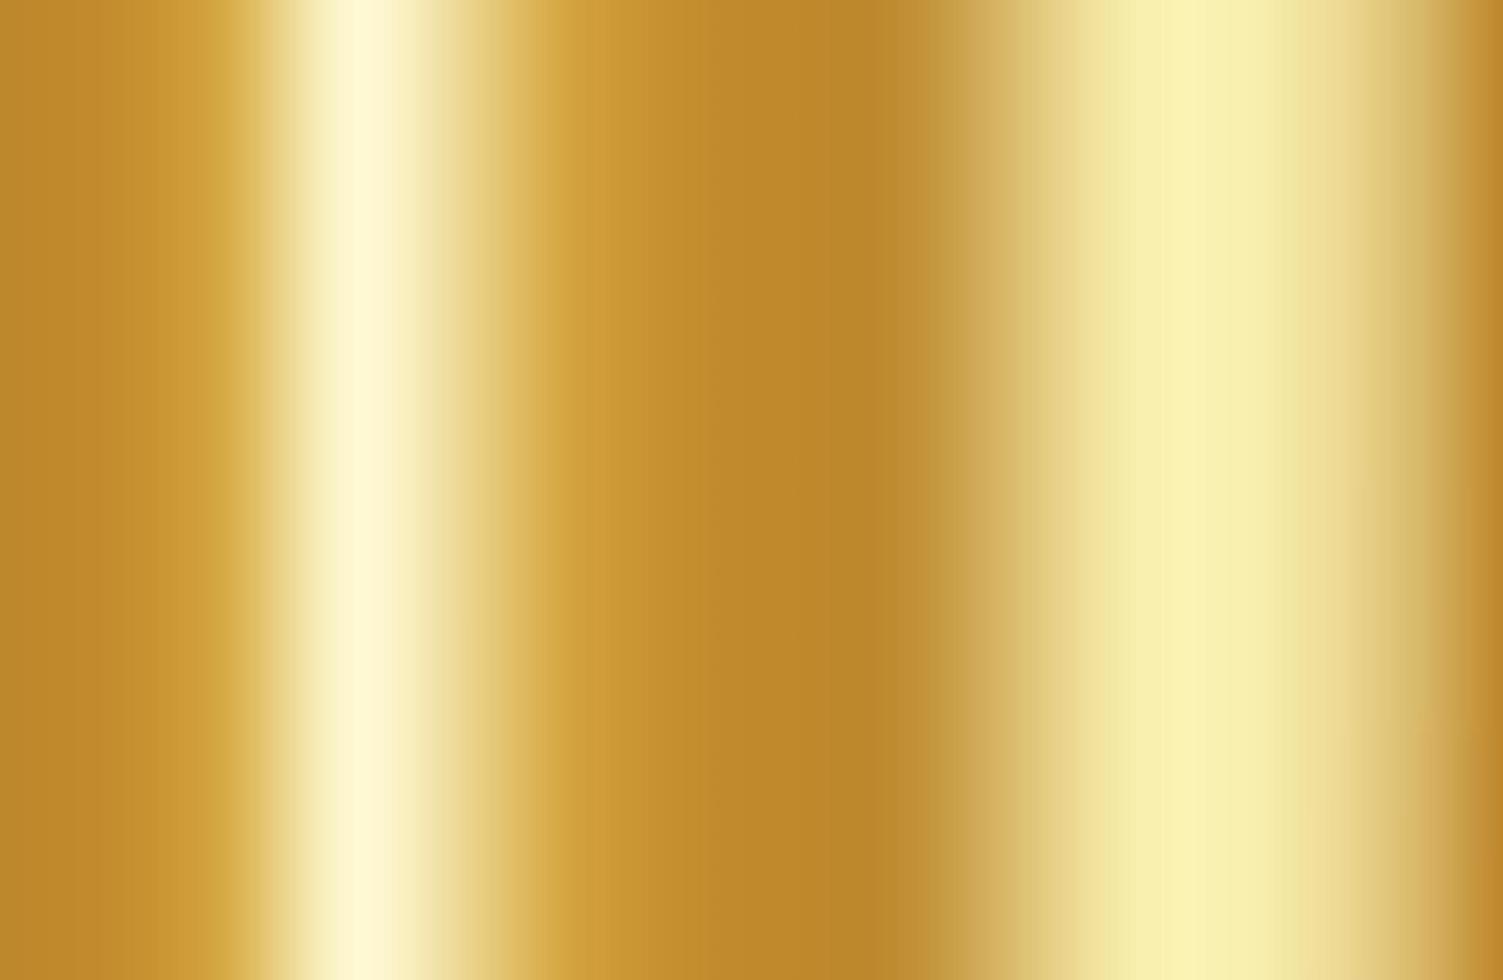 vettore di gradiente d'oro. trama di sfondo sfumato oro metallico